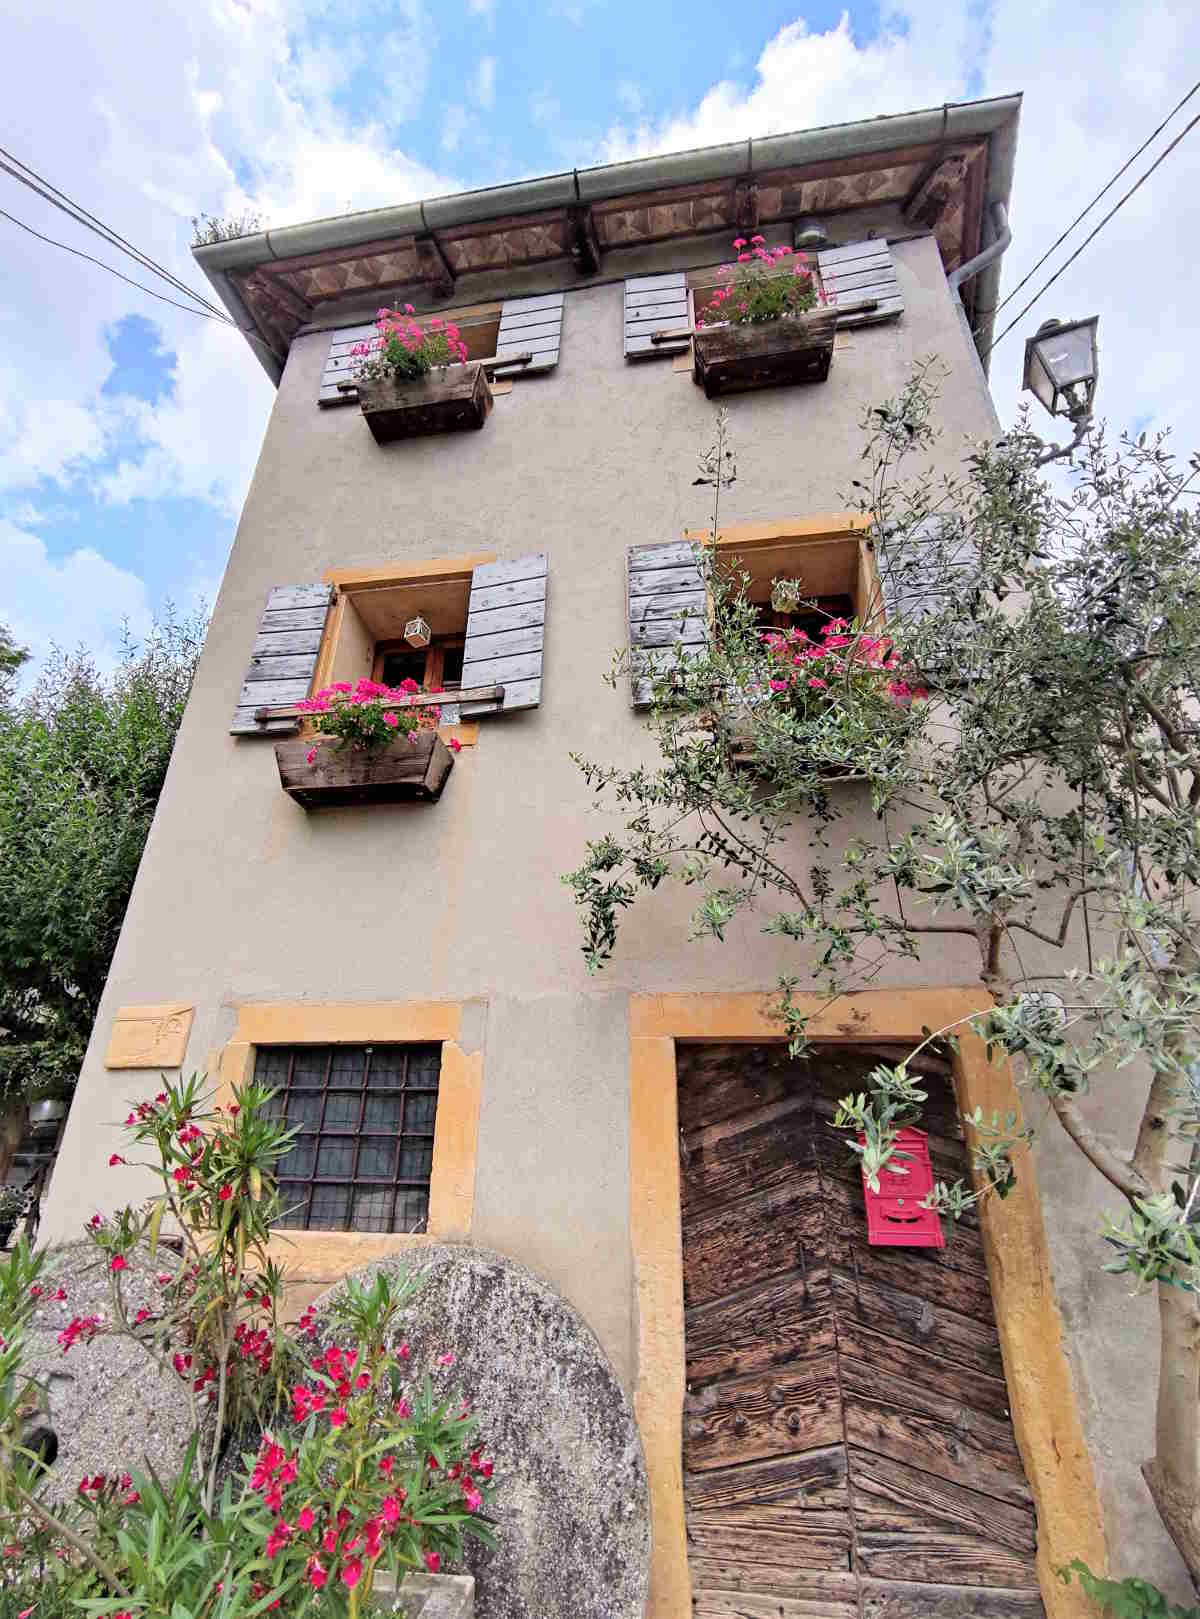 Turismo lento in Veneto: Le casette della Valle dei Mulini fra i Colli Berici